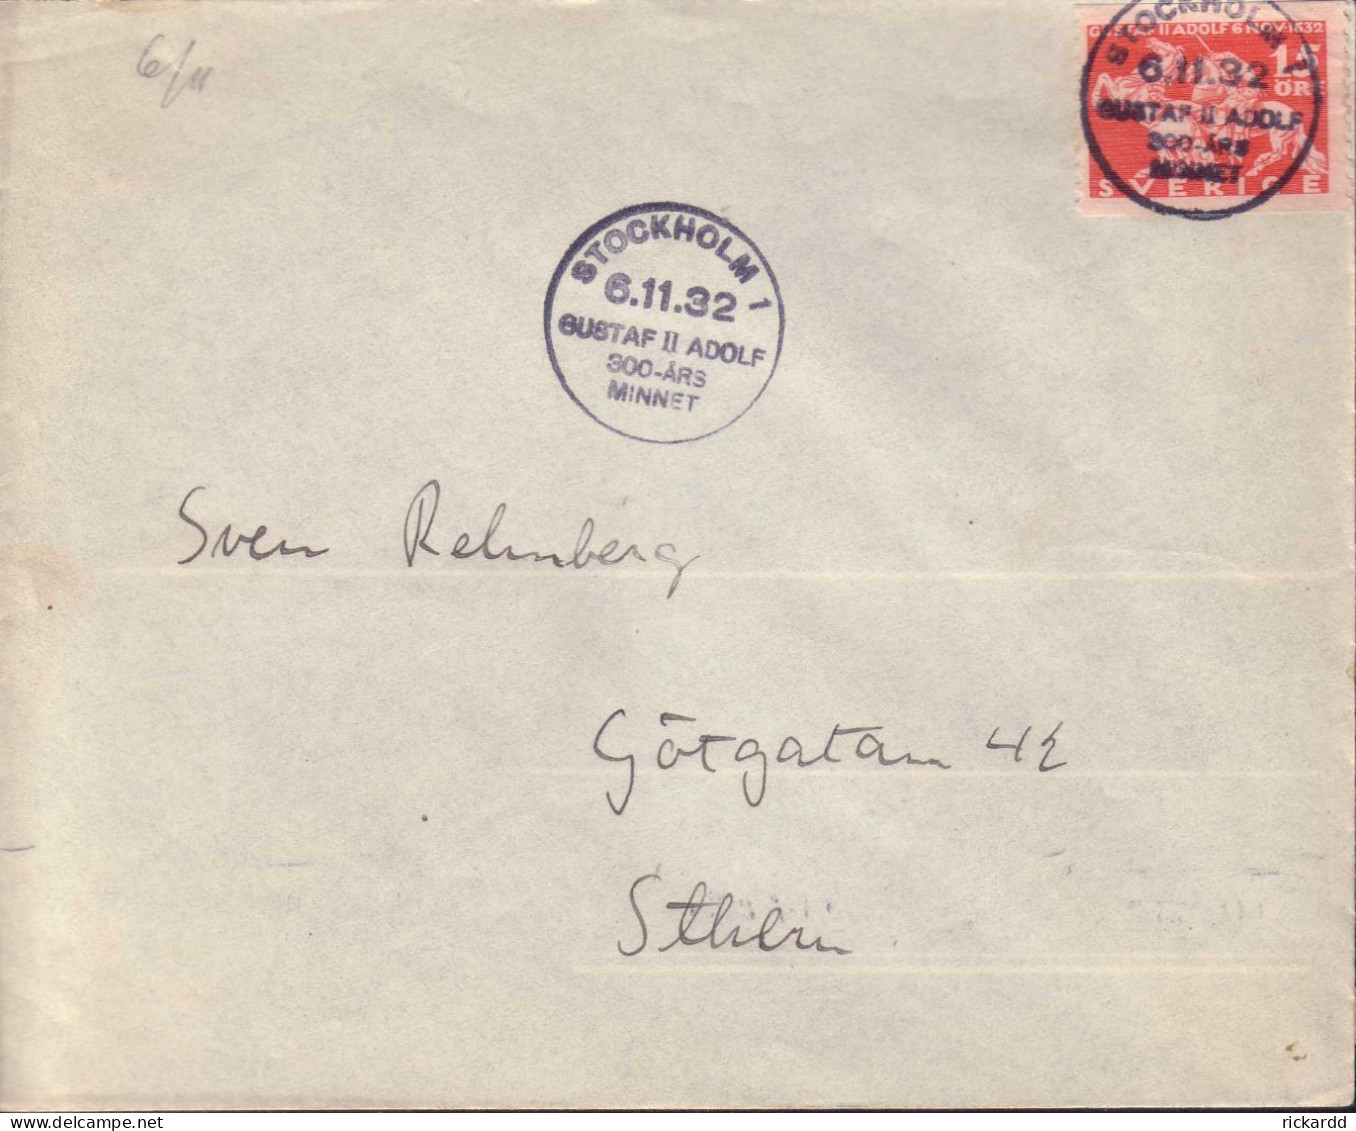 Sweden - Envelope 15 öre Lützen, Special Cancellation 6.11.32 - 1920-1936 Coil Stamps I